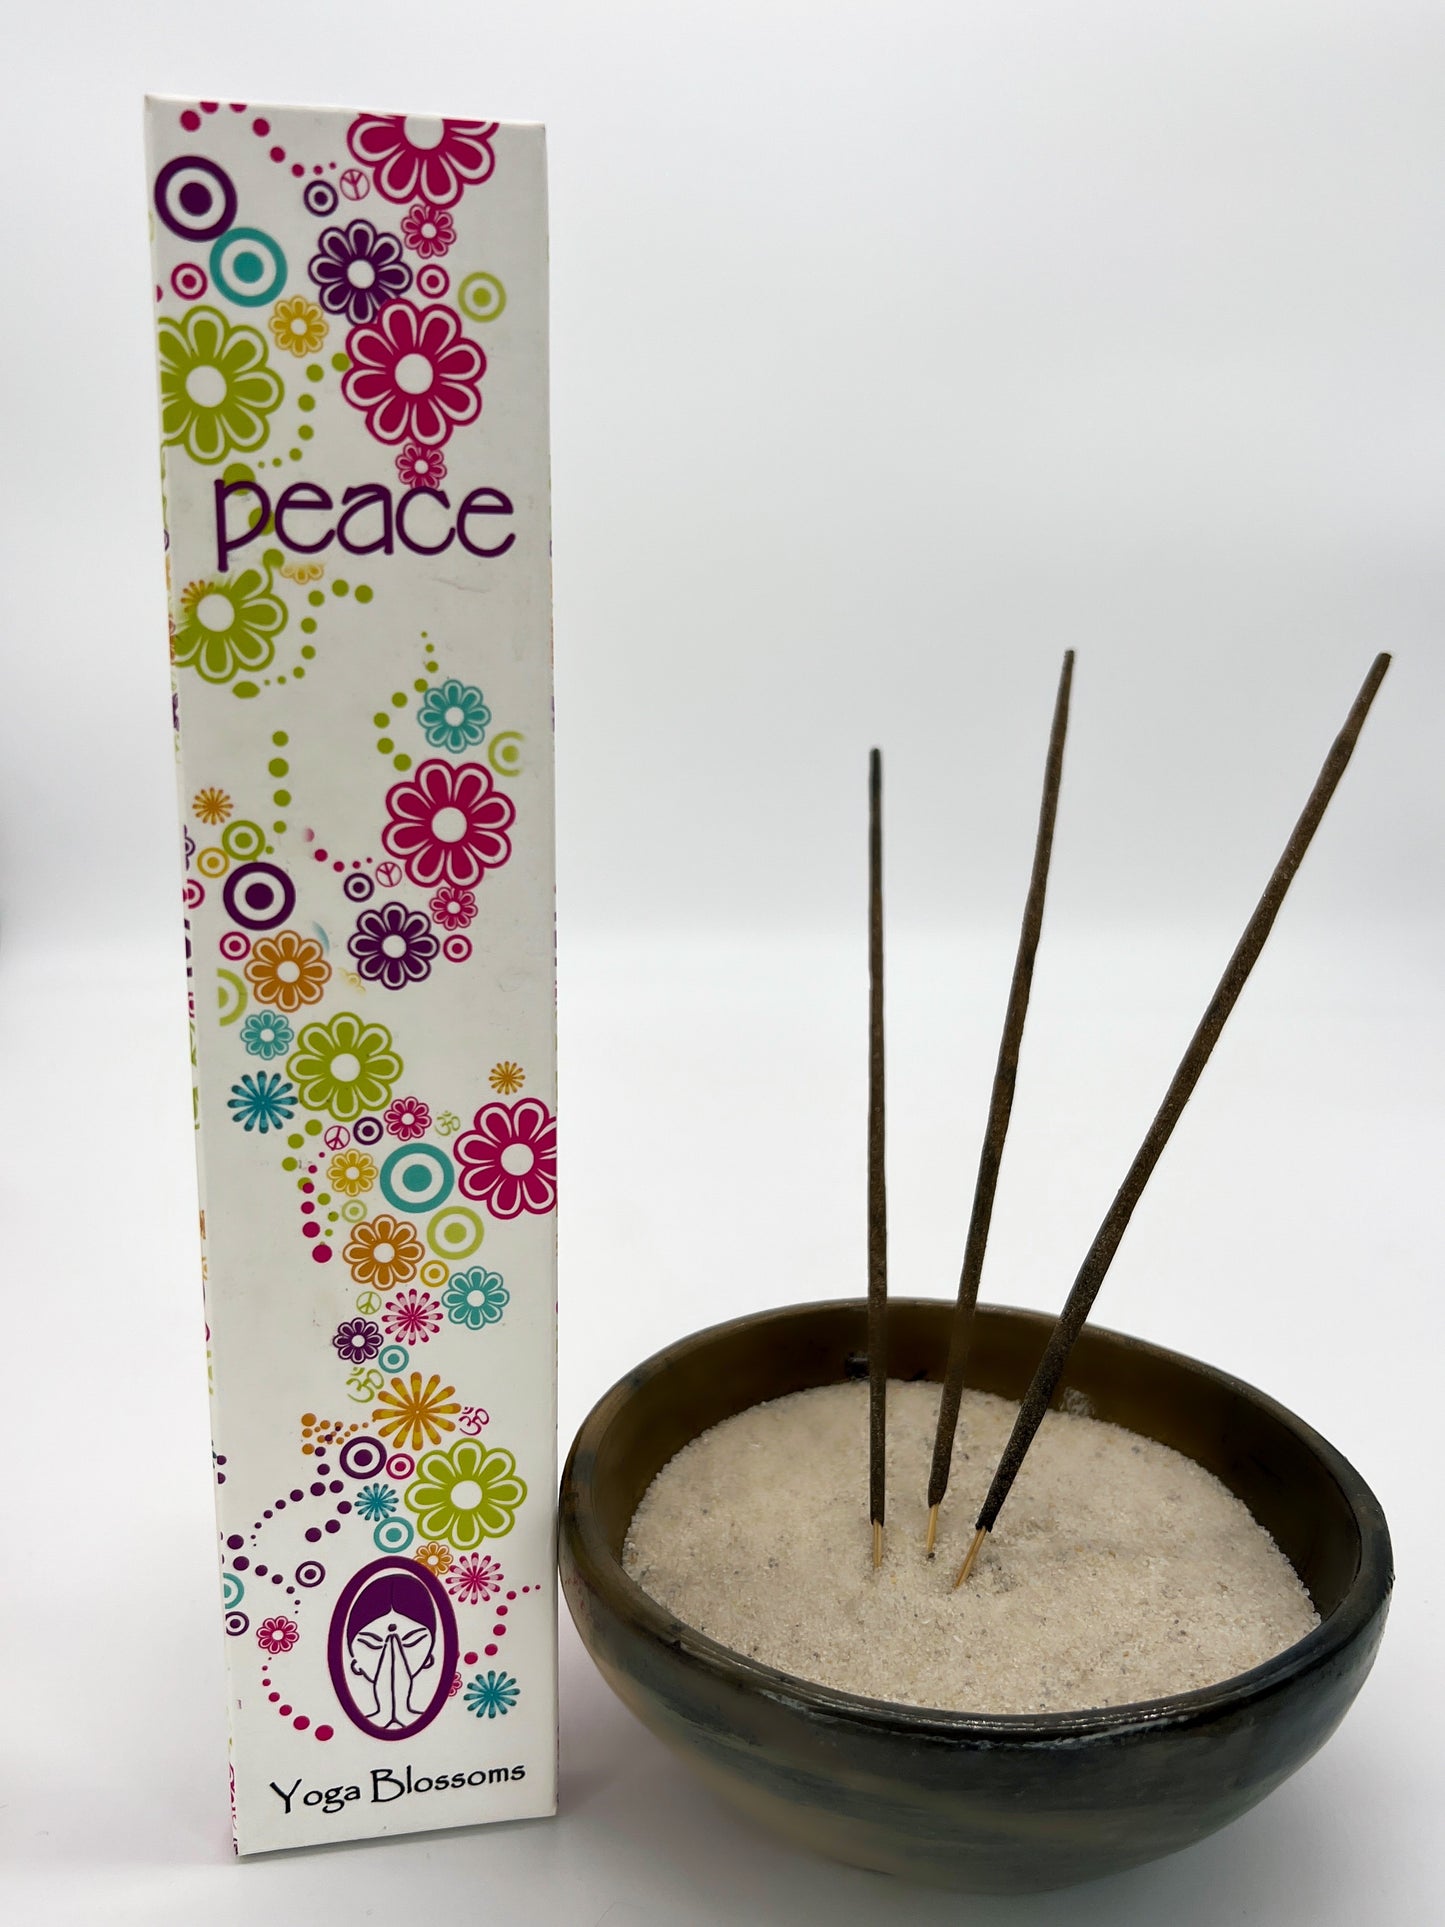 Incense sticks "Yoga Blossoms"